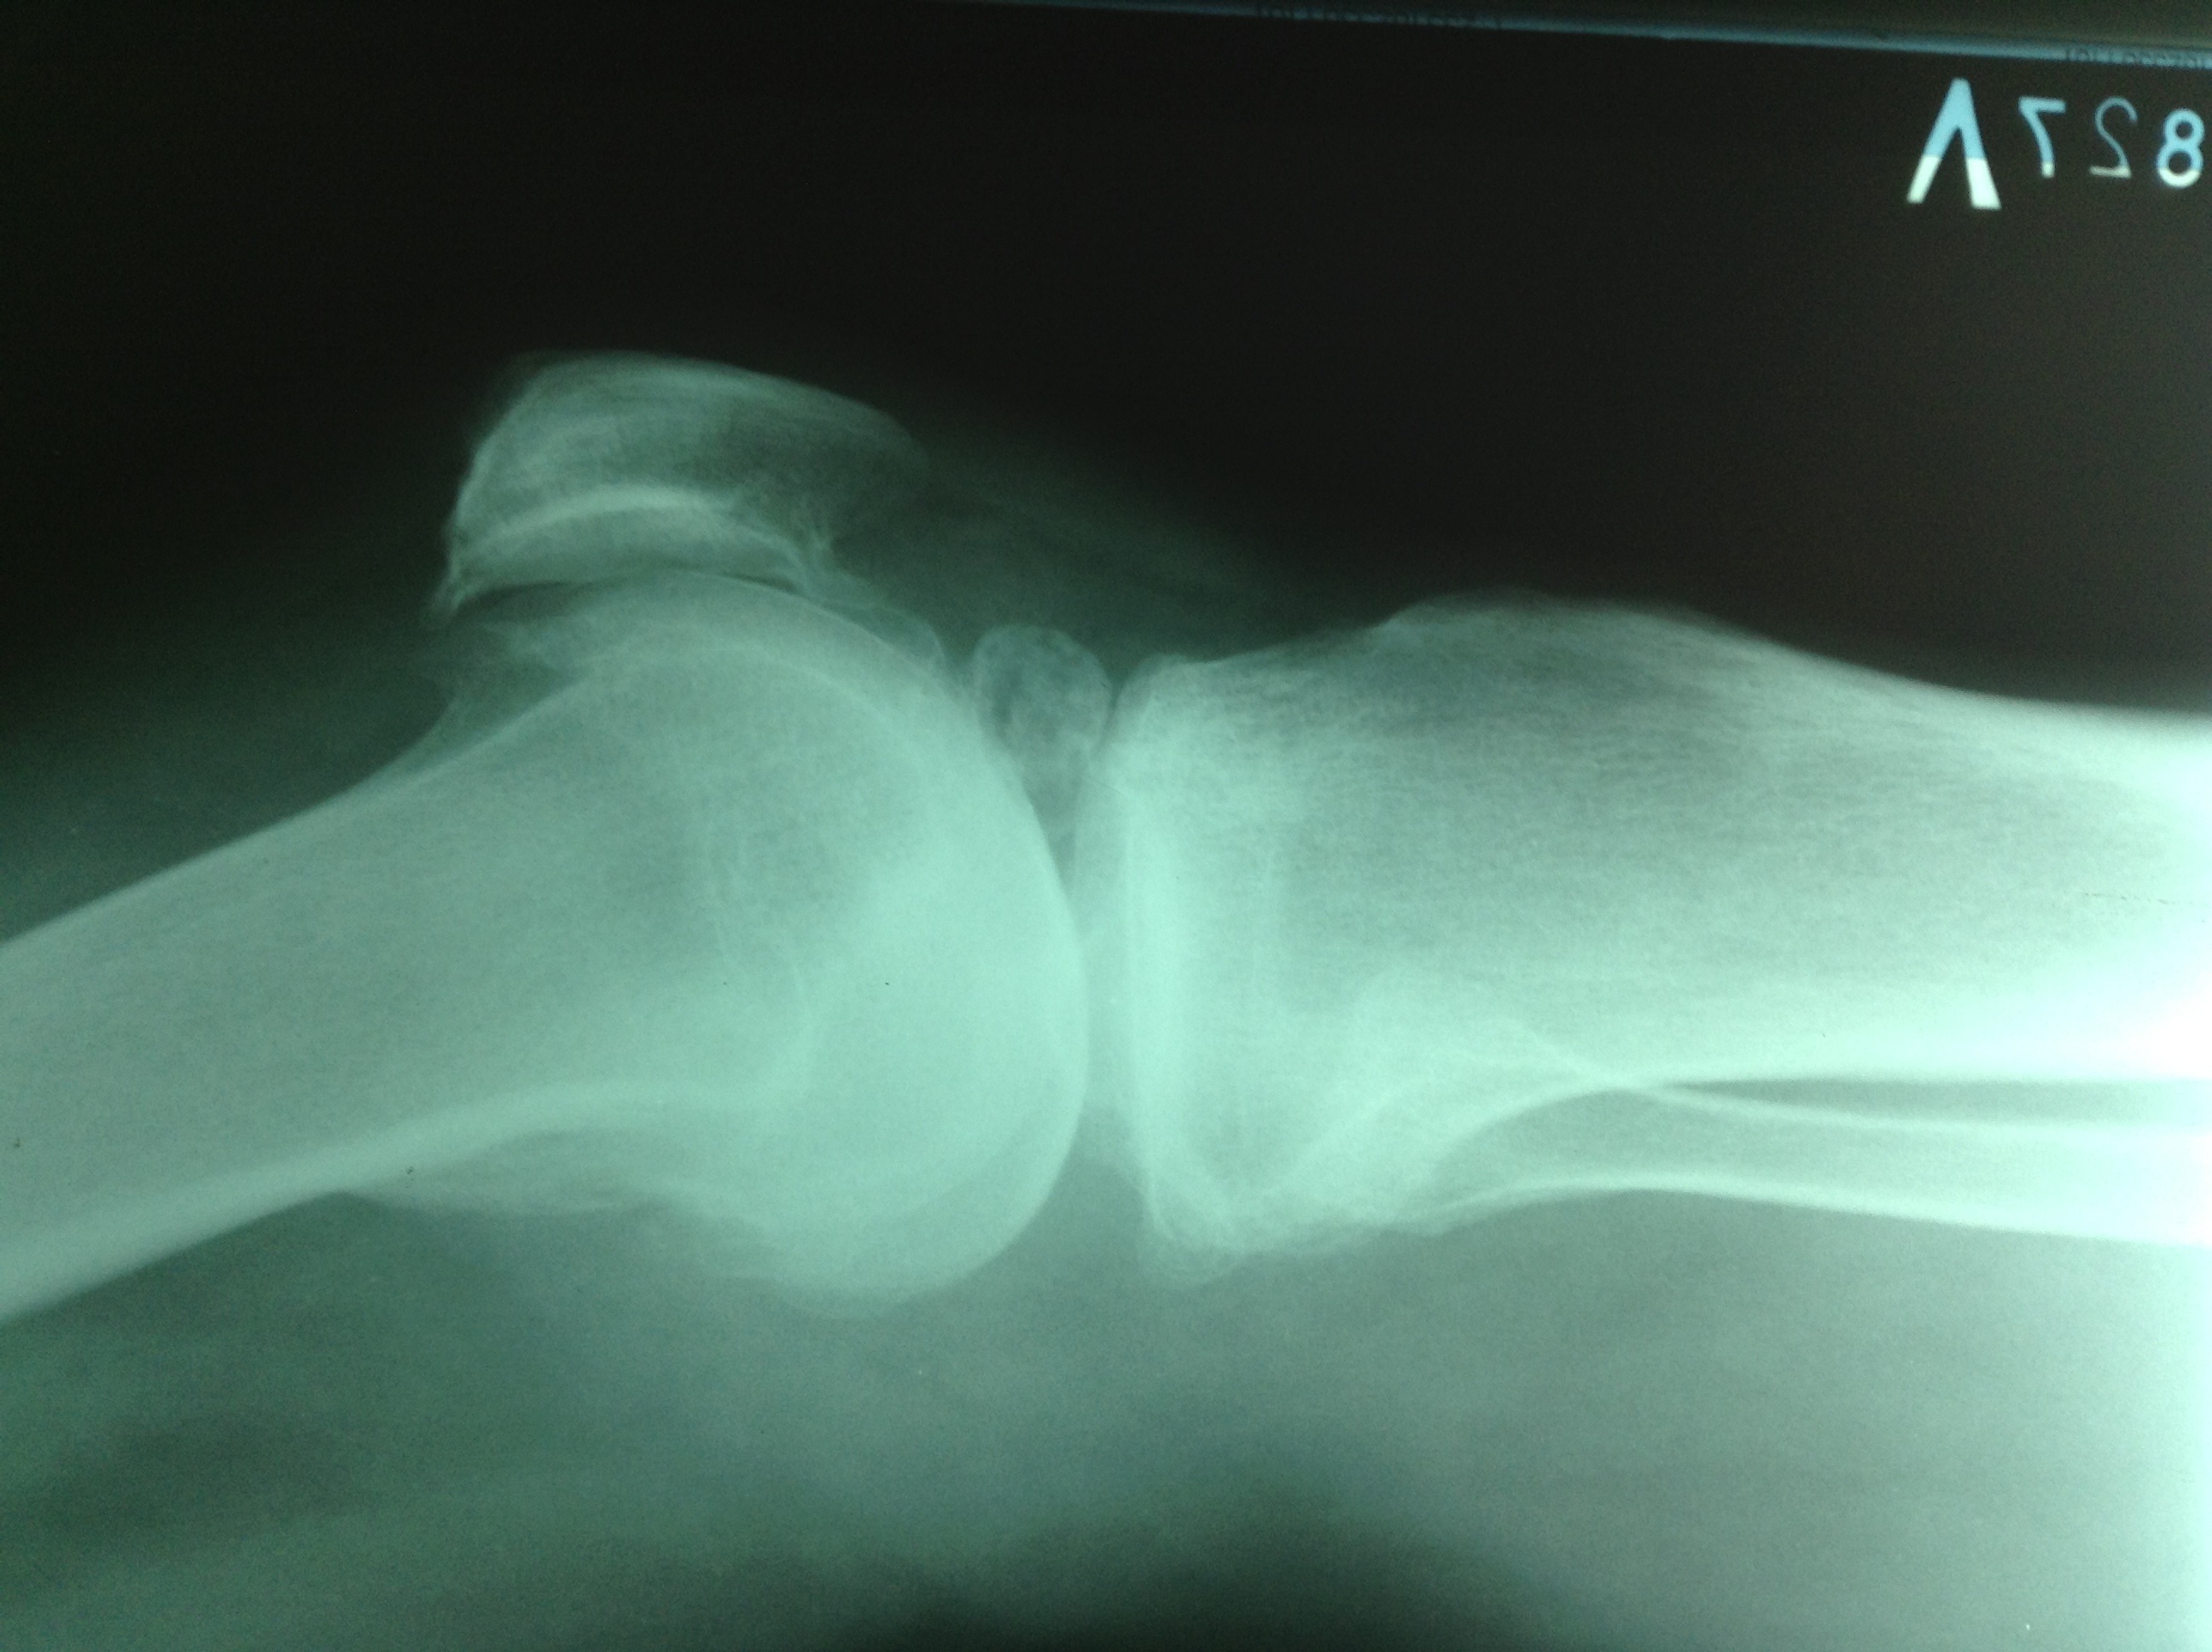 Хондроматоз коленного сустава что это такое и лечение фото